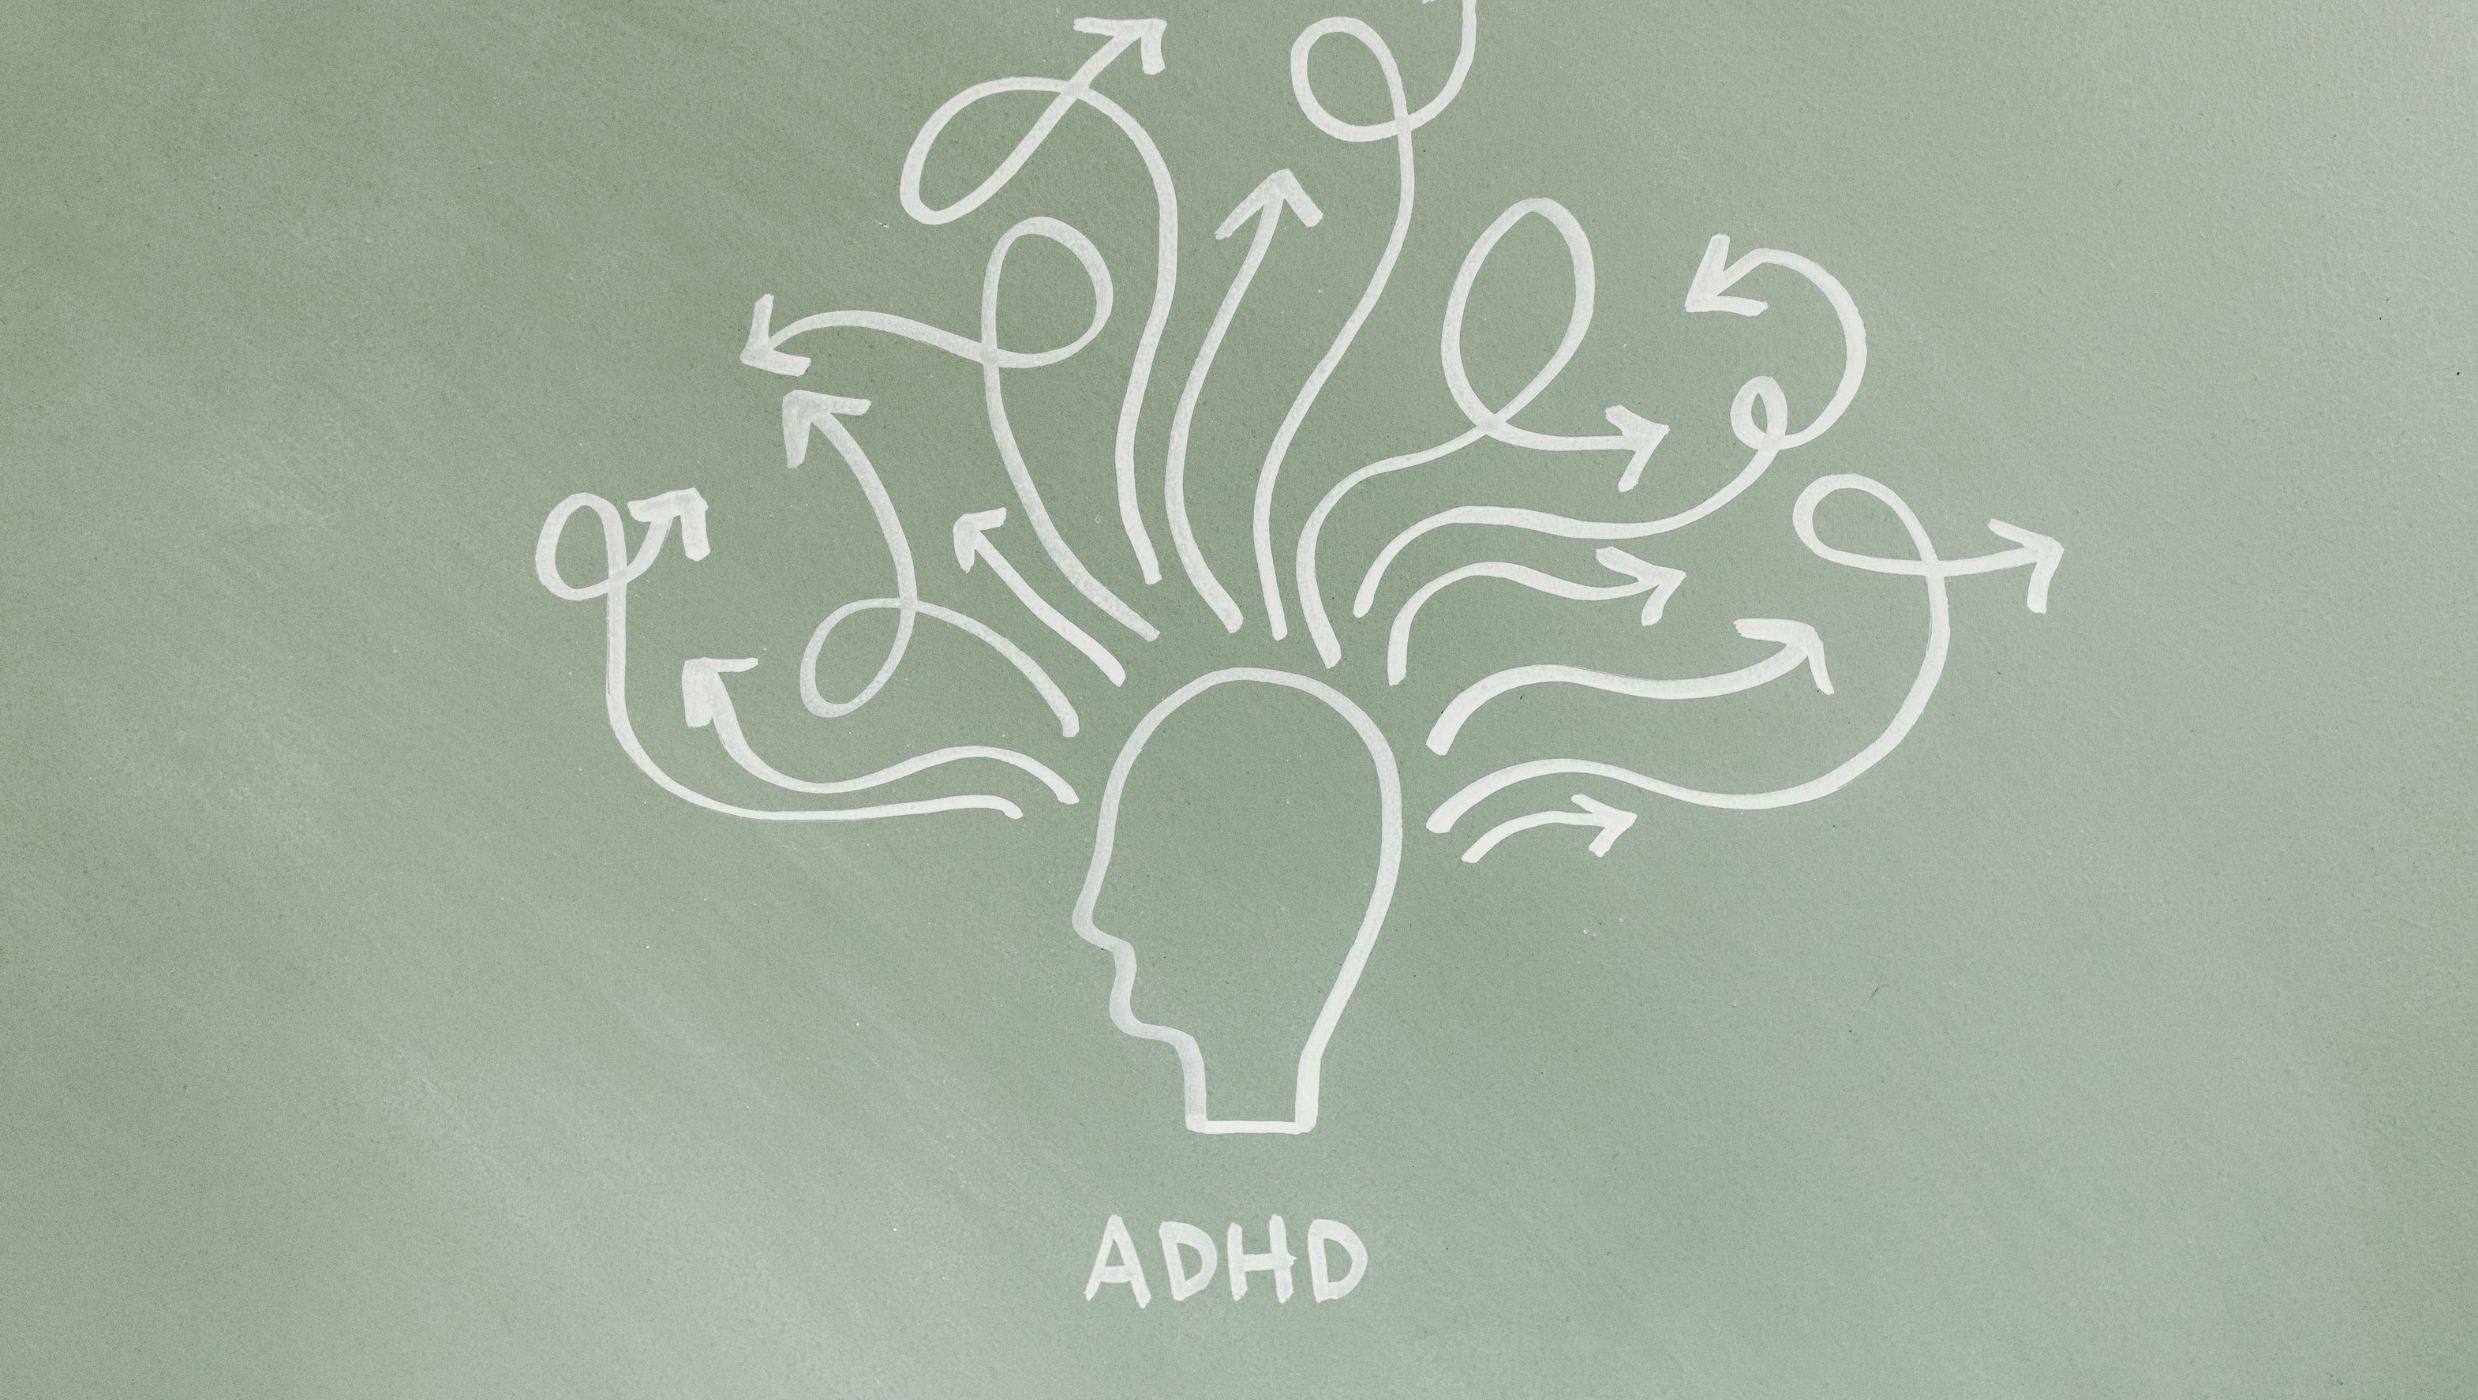 ADHD står for Attention Deficit Hyperactivity Disorder – som er en diagnose, hvor man har besvær med at koncentrere sig, holde opmærksomheden, er impulsiv og hyper.  